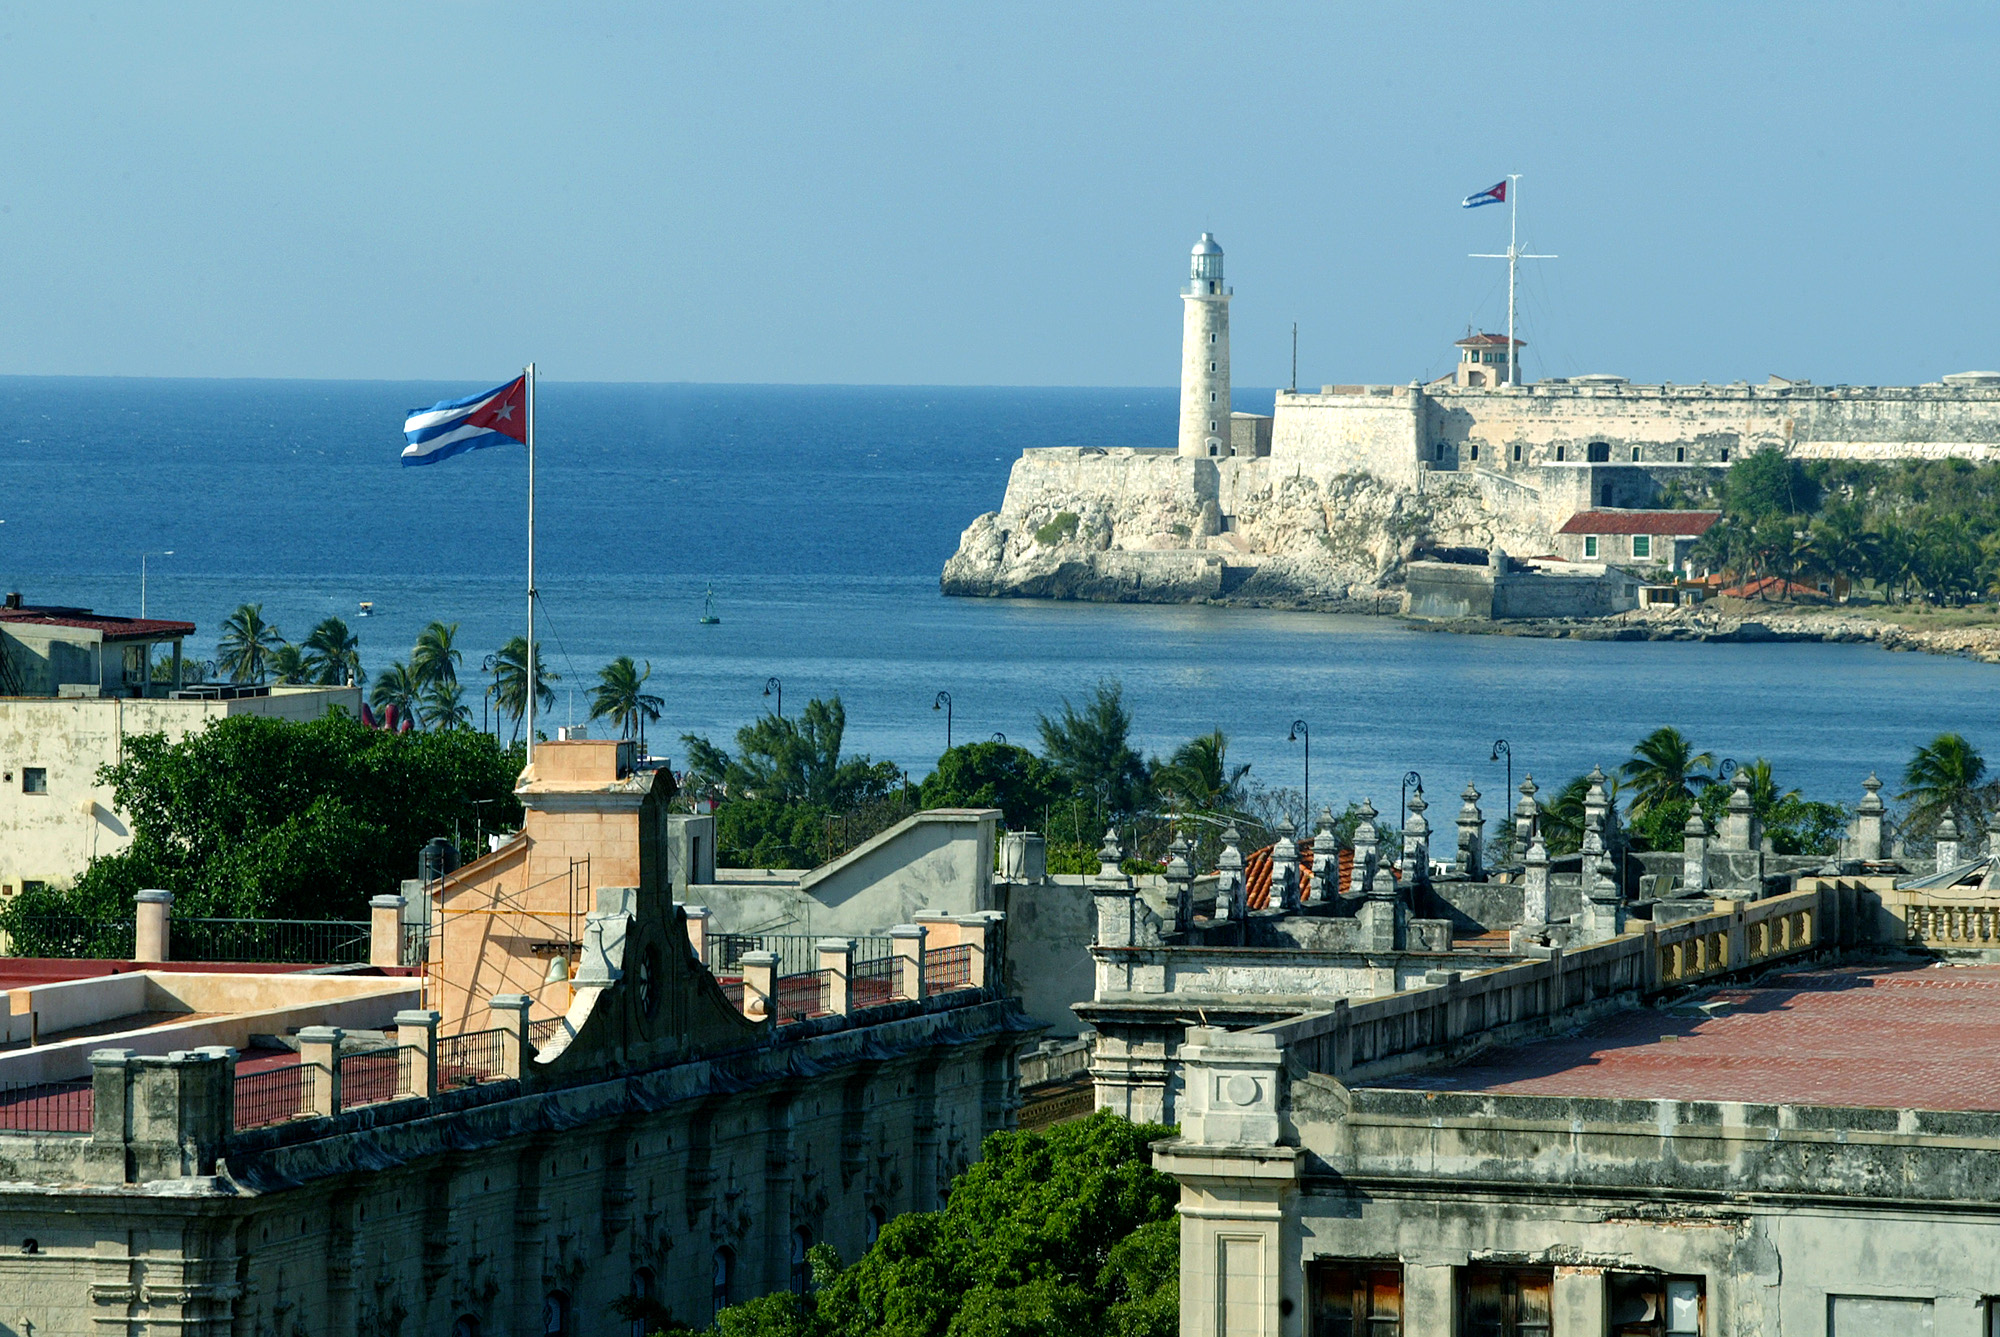 Απευθείας ακτοπλοϊκή σύνδεση ΗΠΑ – Κούβα μετά από 50 χρόνια